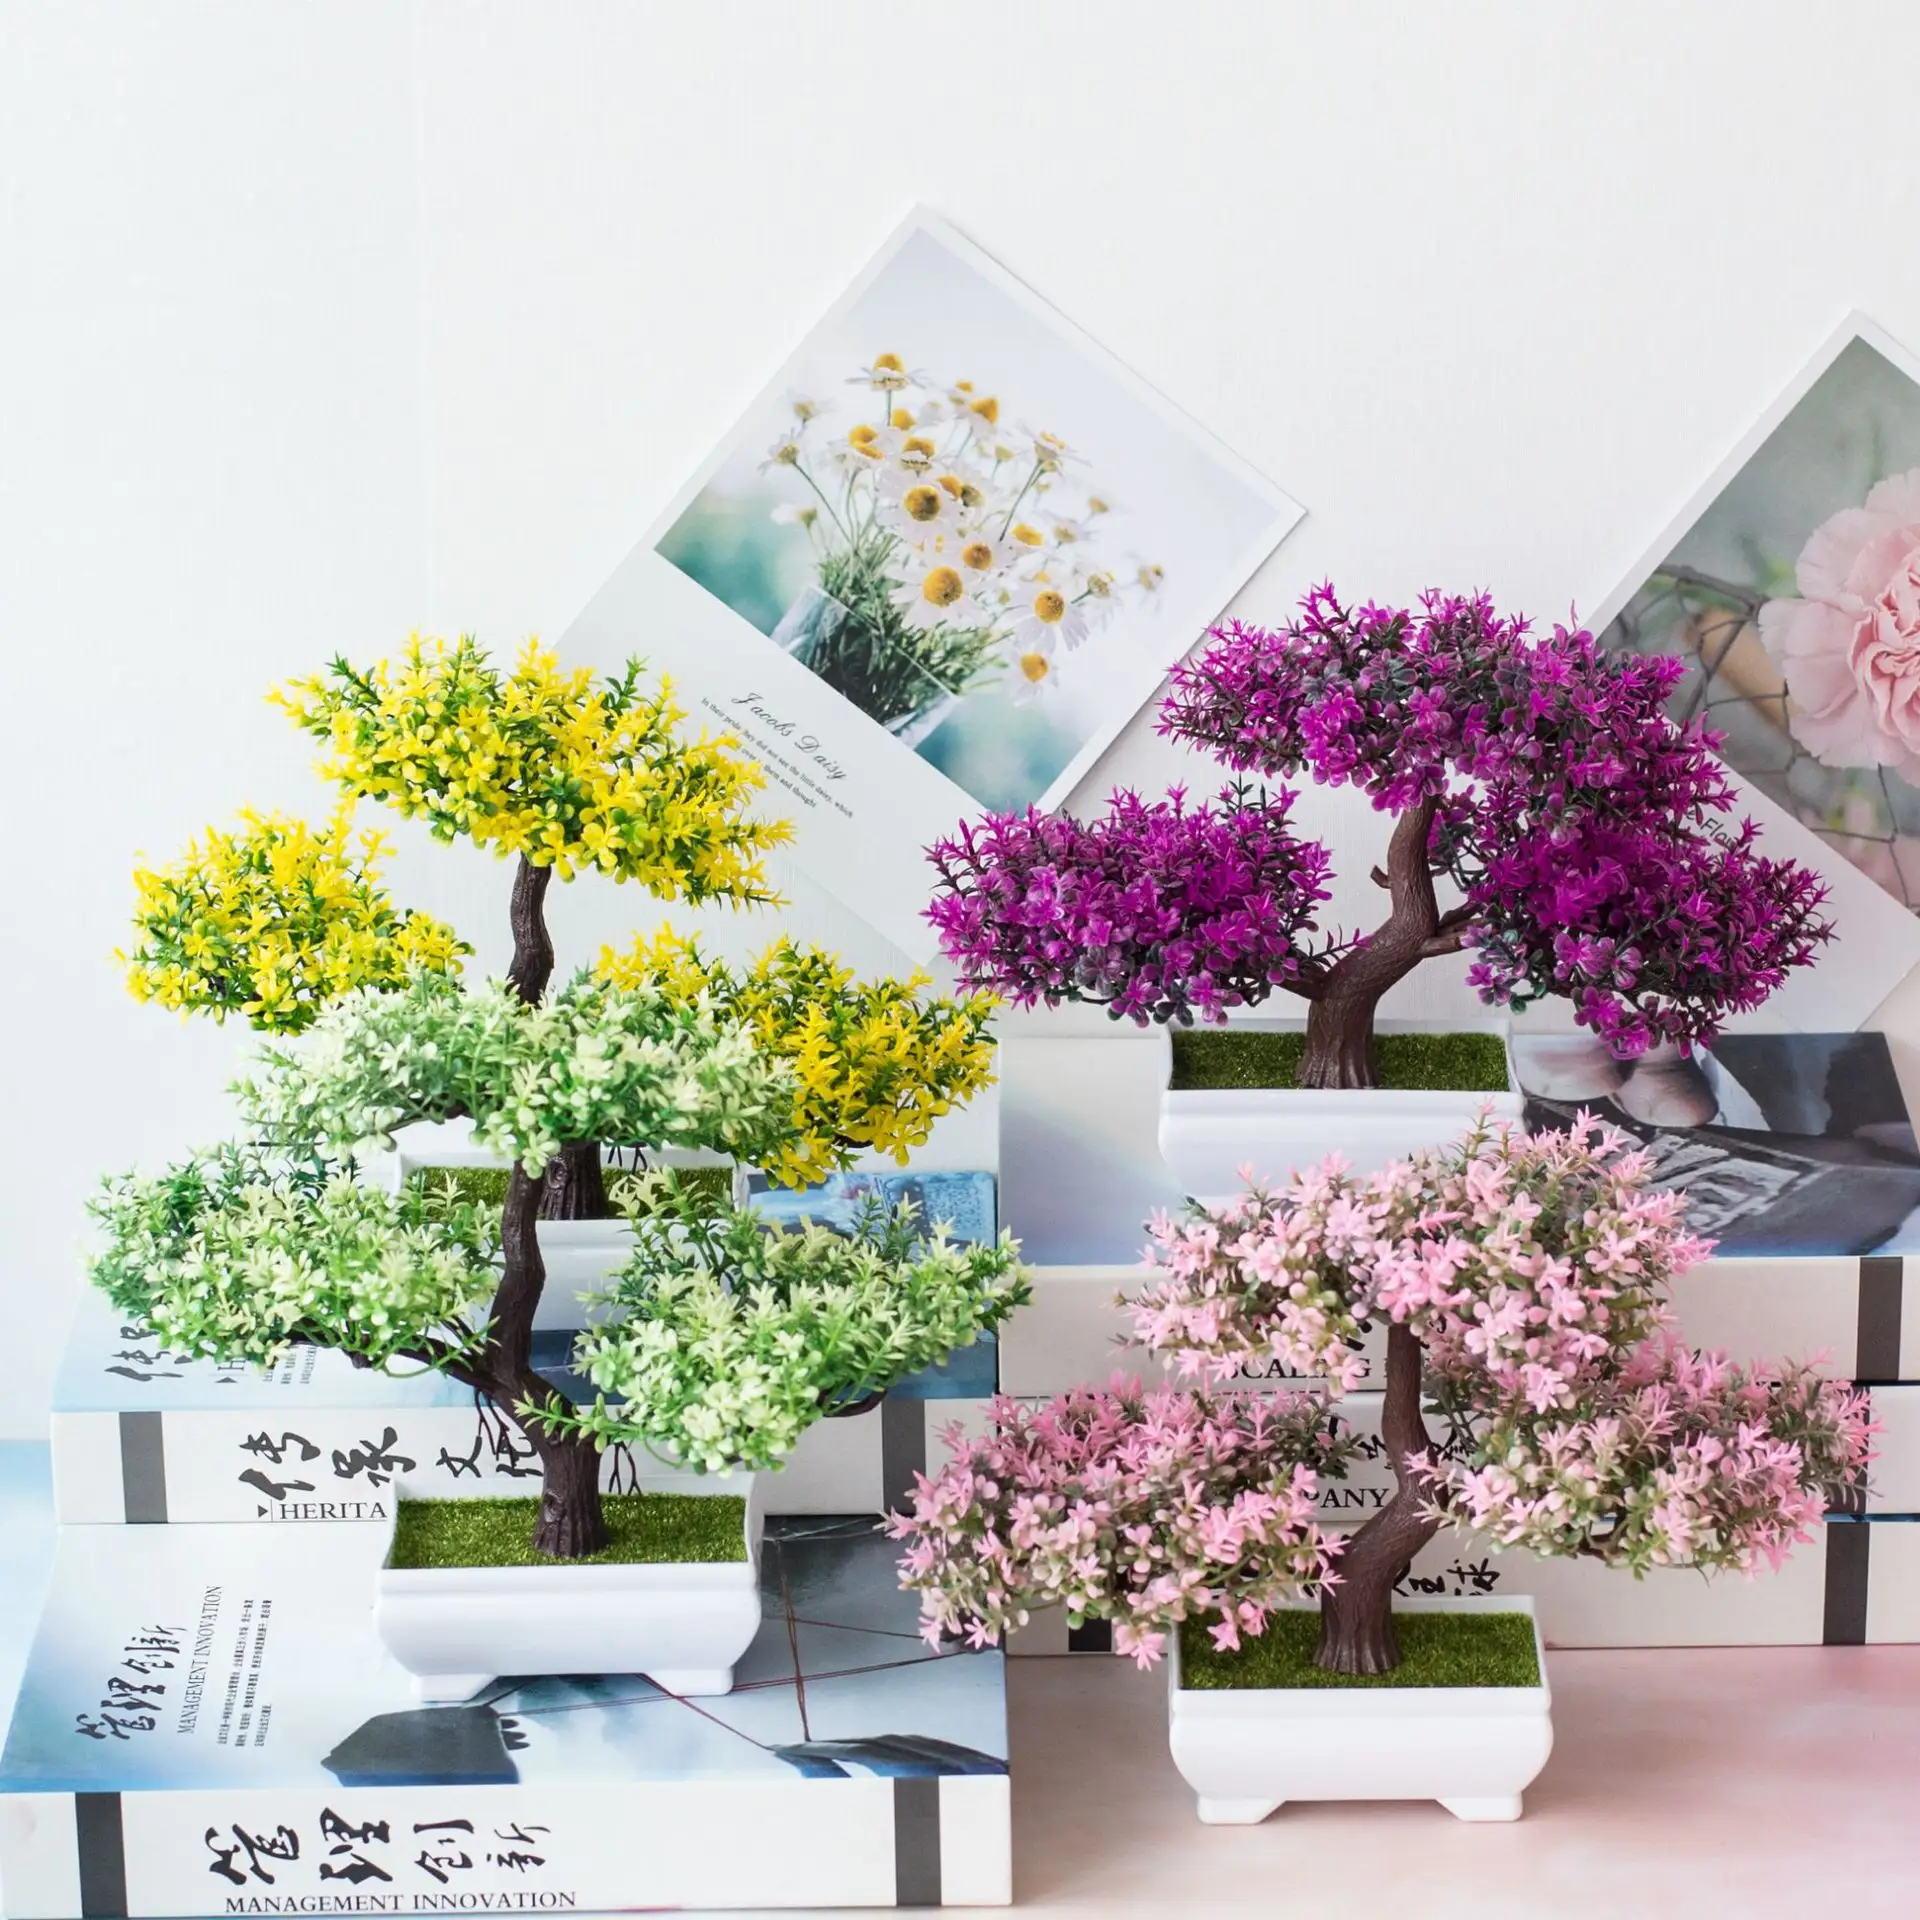 Fabrik Großhandel heißen Verkauf kleine Bonsai Bäume Home Style moderne Dekor Kunststoff künstliche Pflanzen Topf